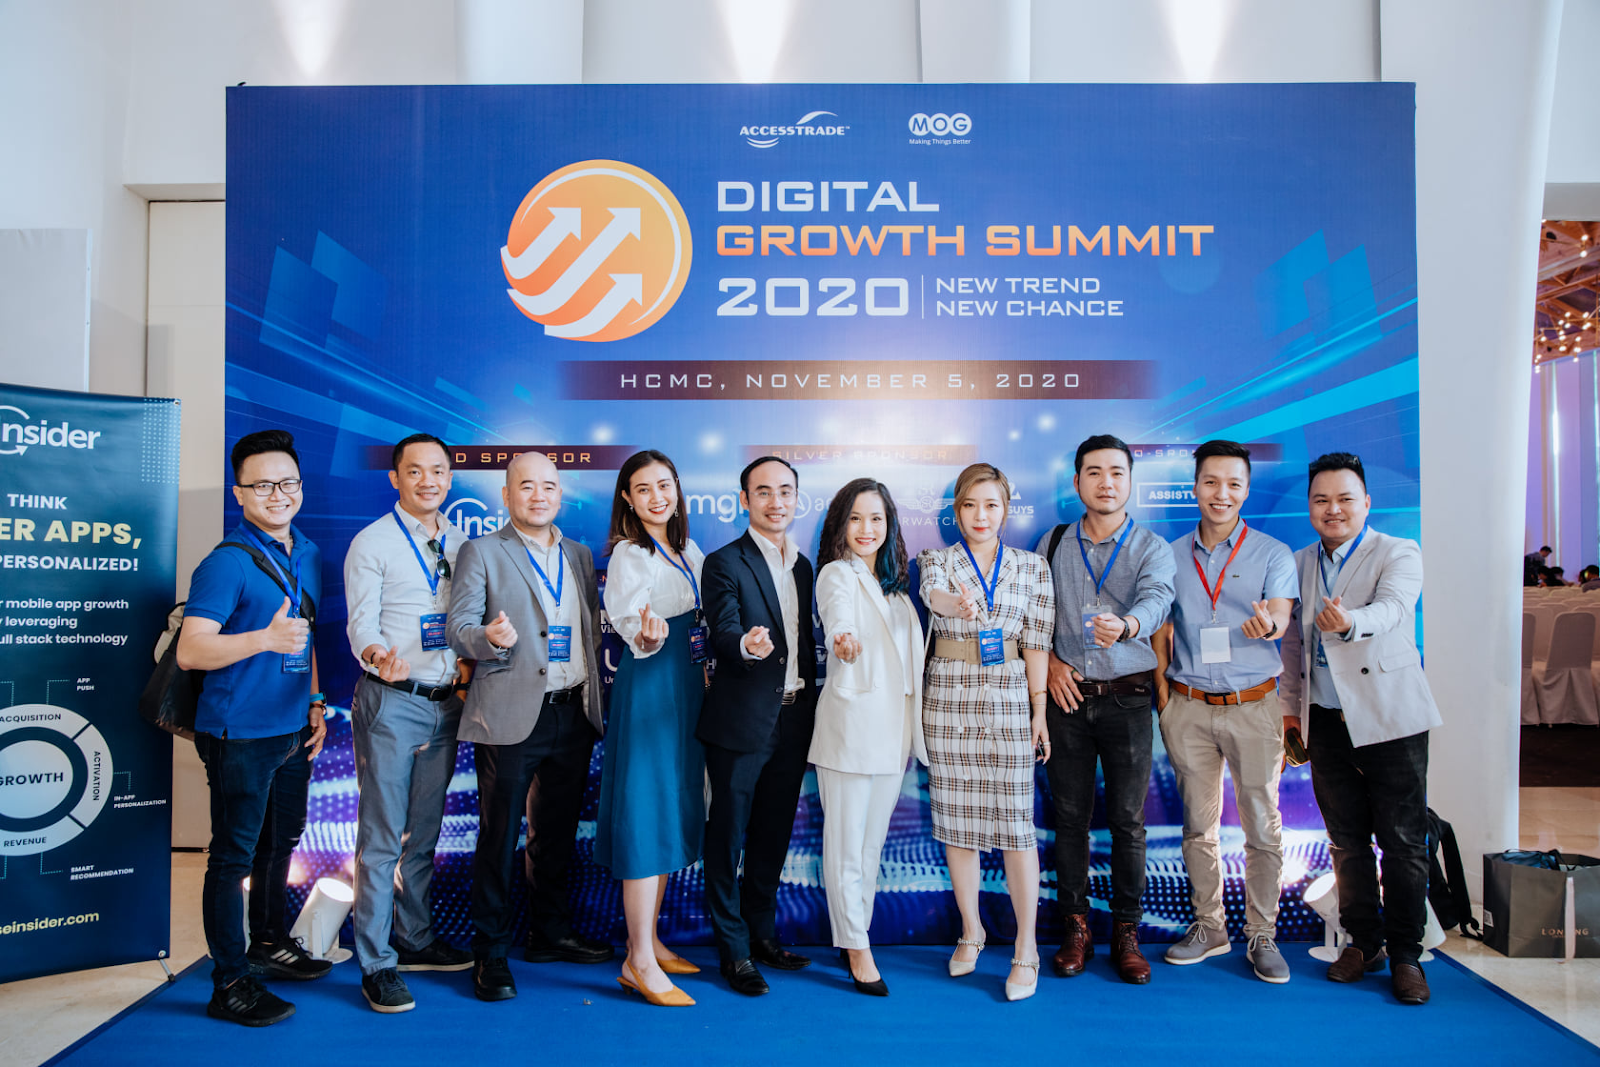 RECAP Sự Kiện Digital Growth Summit 2020: Đón đầu xu hướng tăng trưởng mới cho doanh nghiệp